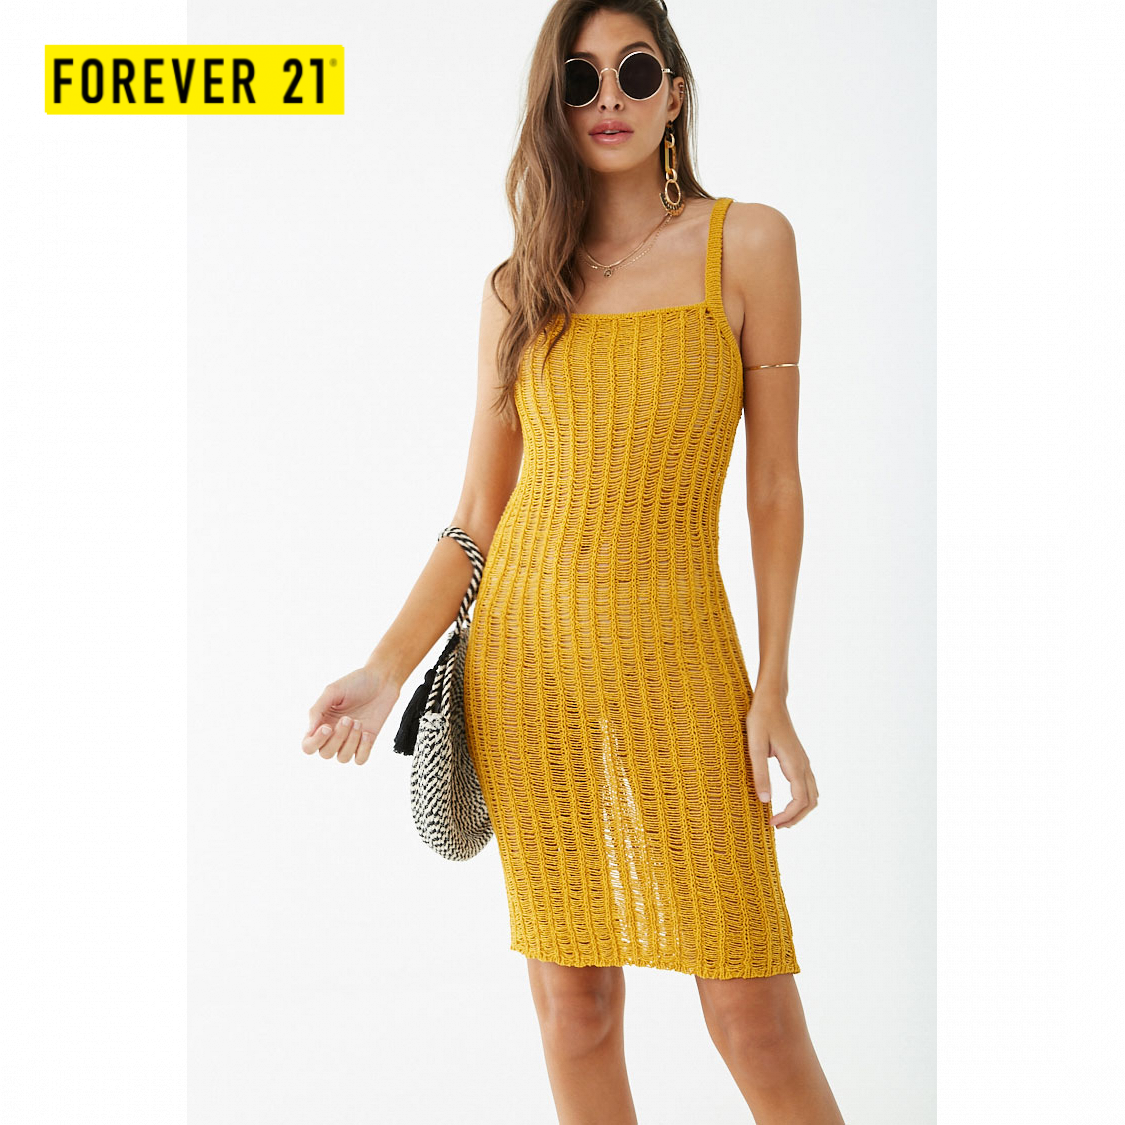 forever 21 cami dress